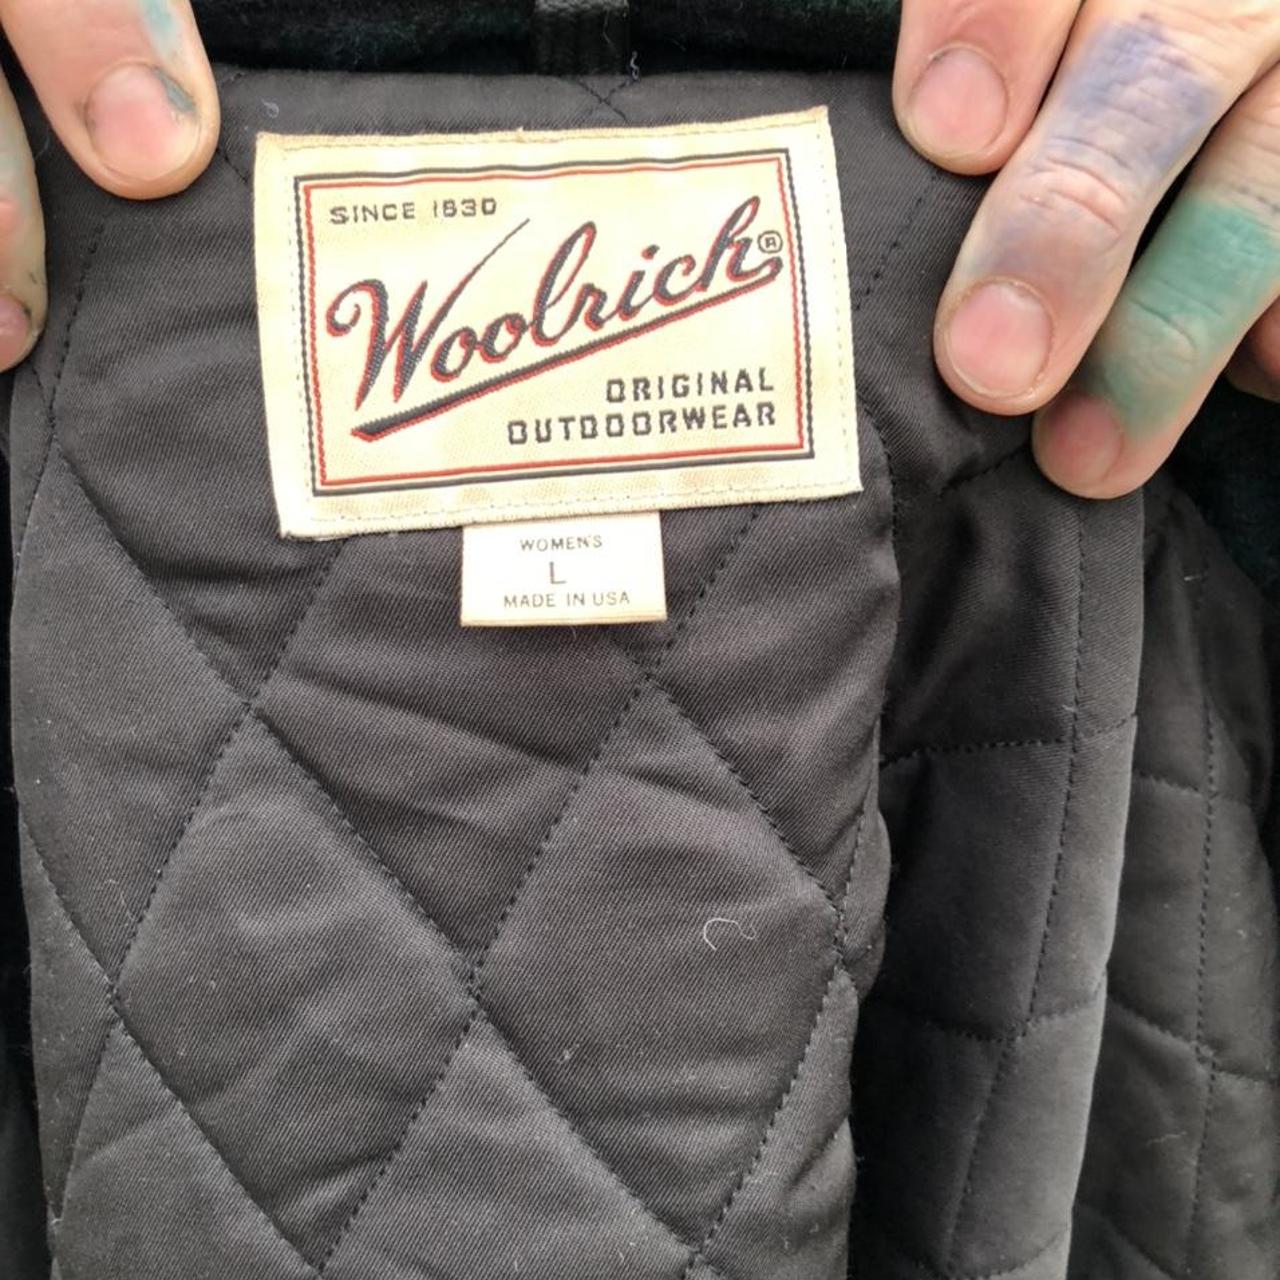 vintage Woolrich wool Chore Jacket with blanket... - Depop